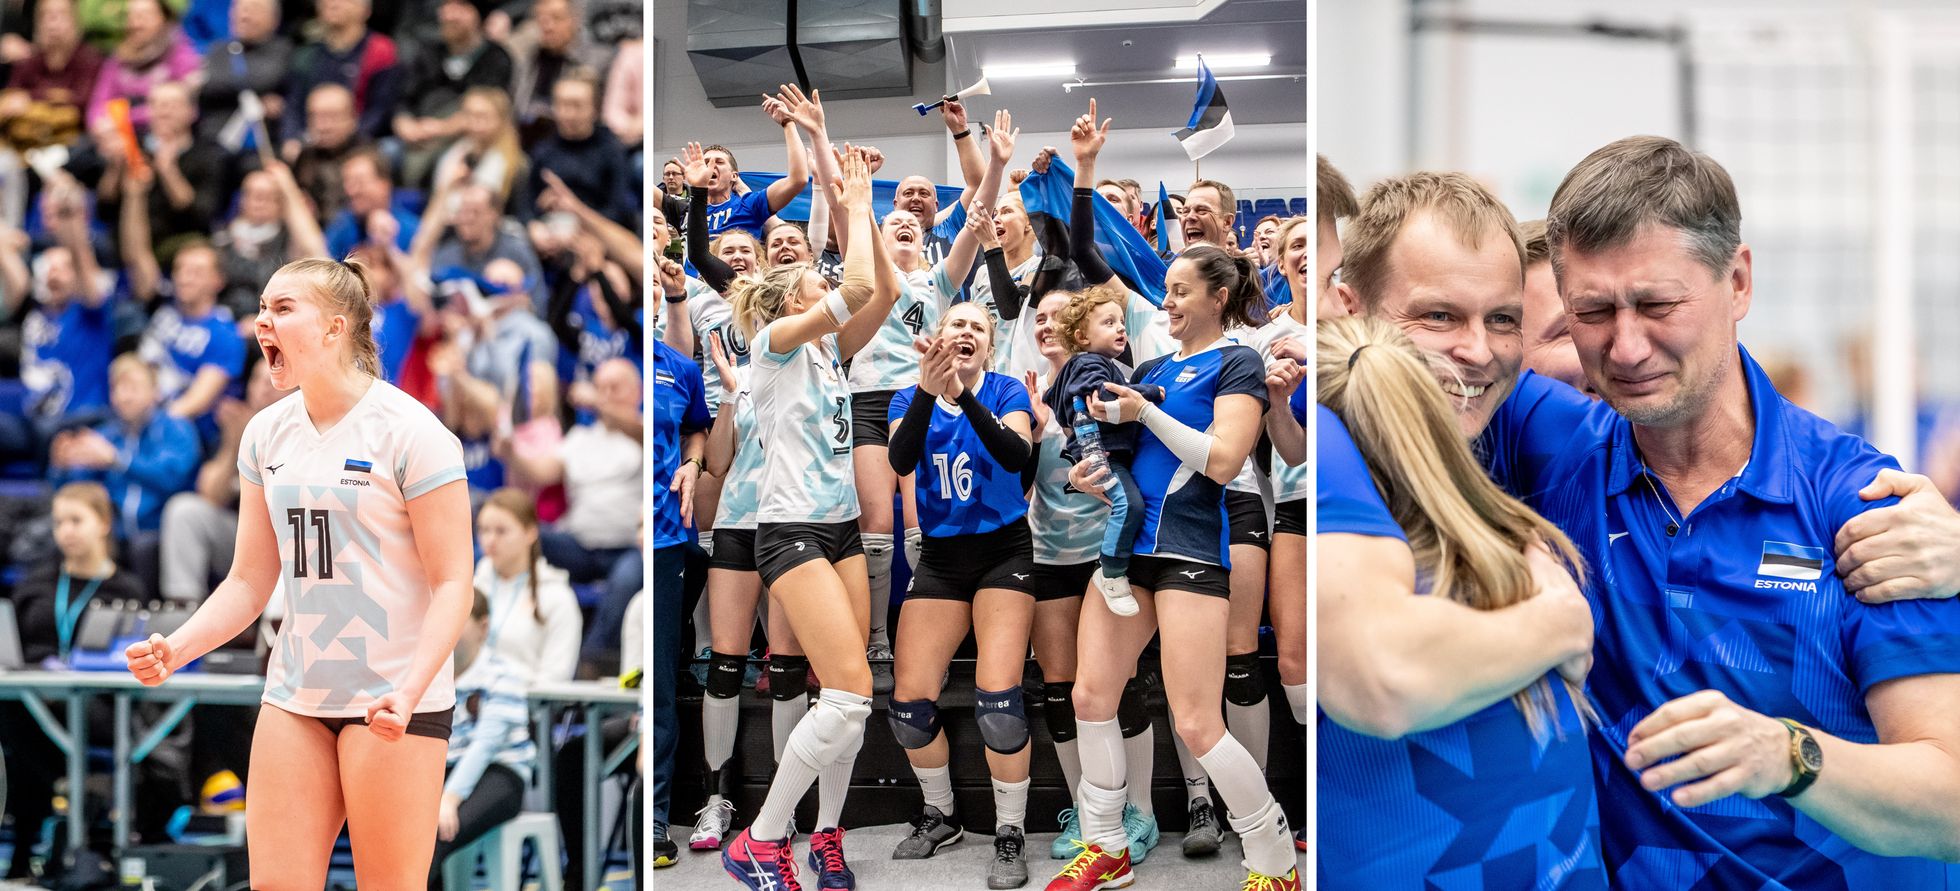 Nädala kolmandal päeval tegi Eesti võrkpalli naiskond ajalugu Soomes, kus põhjanaabreid alistades jõuti EM finaalturniirile.